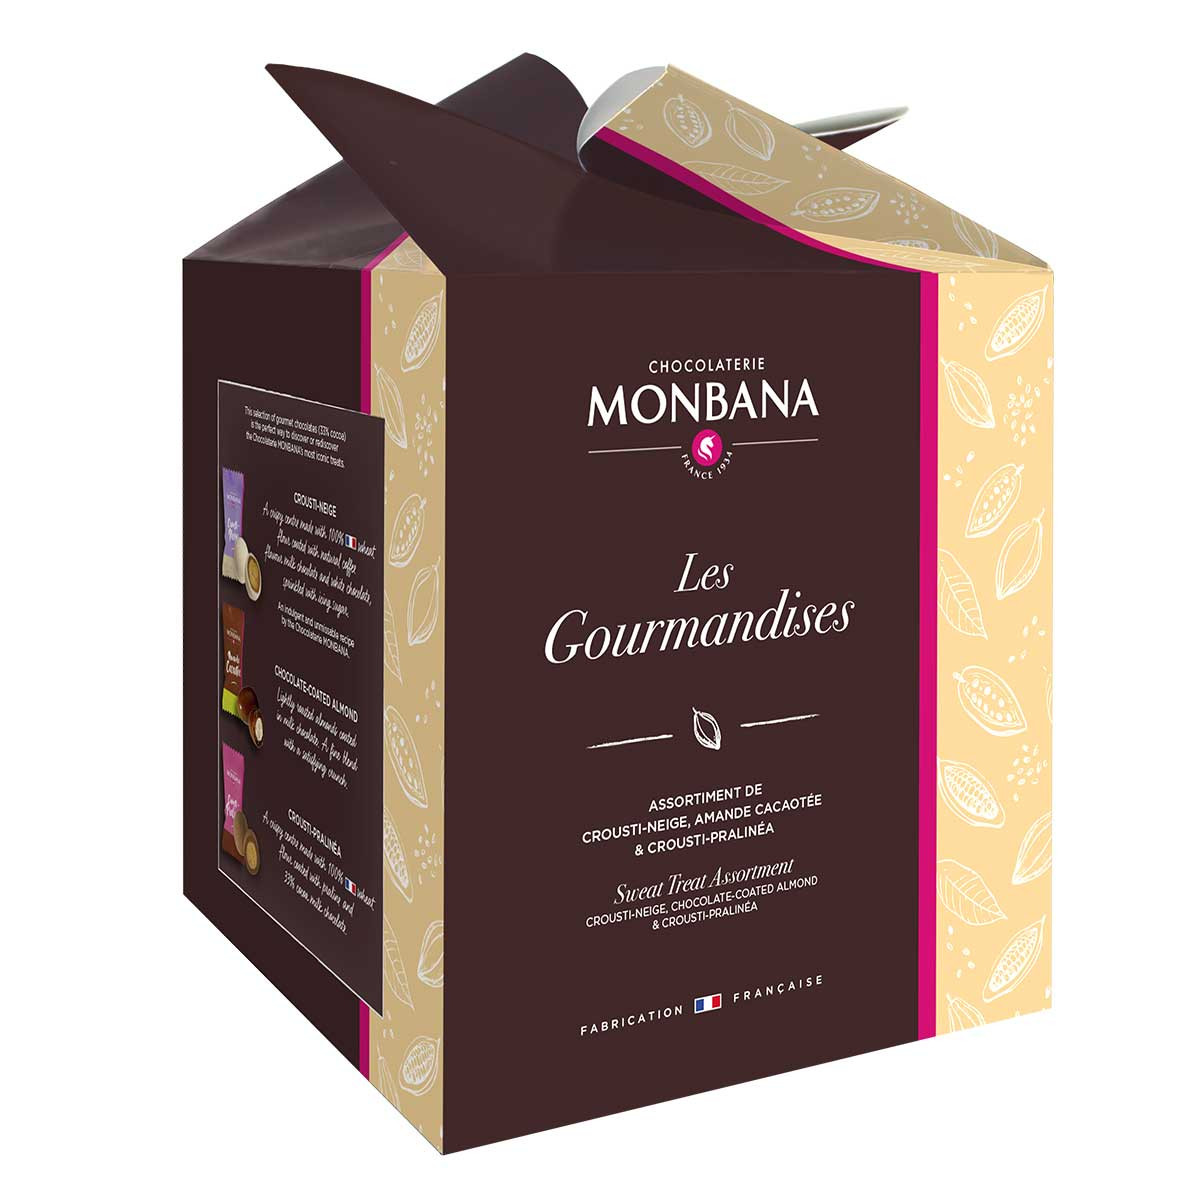 Monbana 150 craquants & chocolats